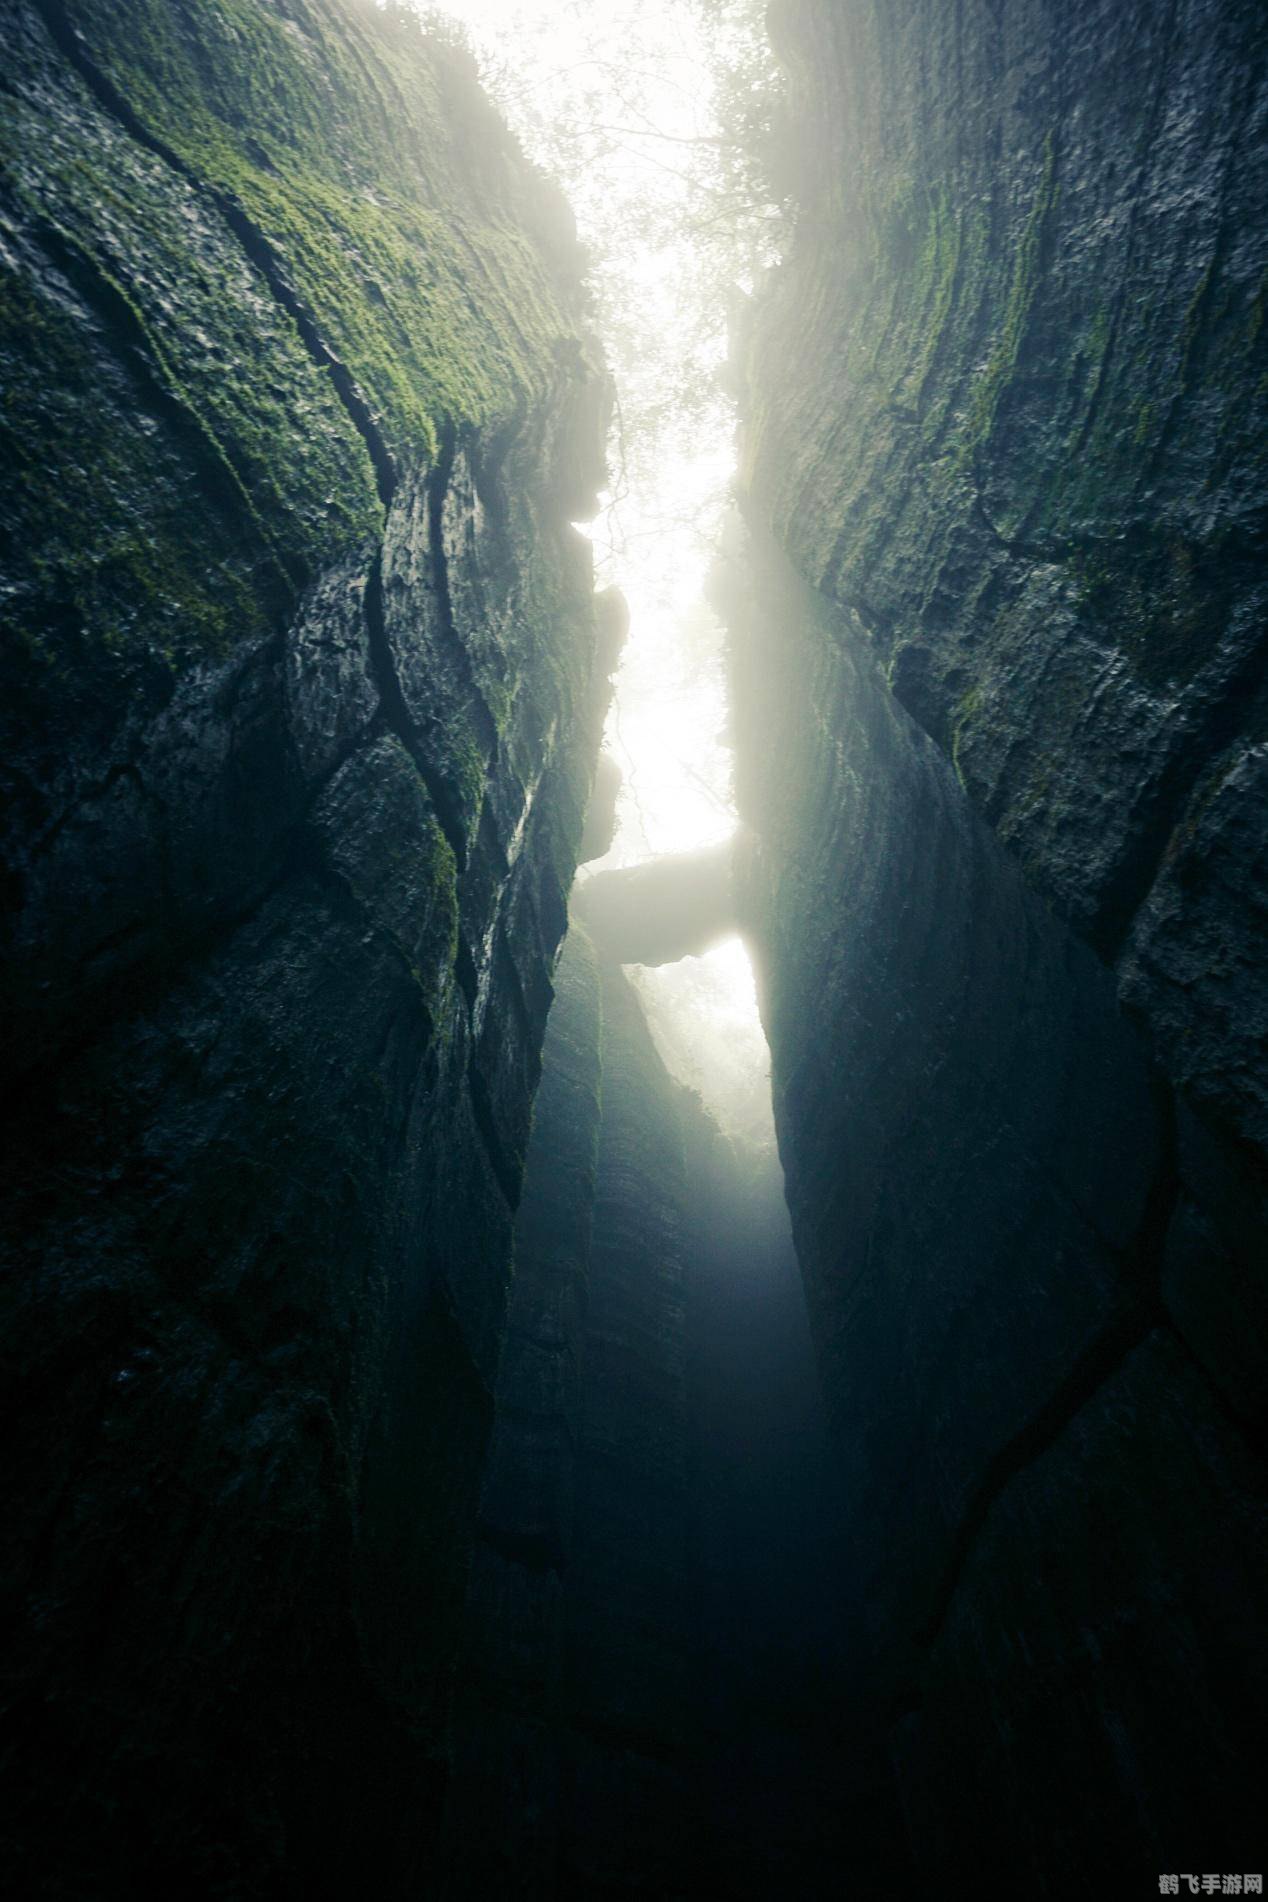 迷雾探险：穿越未知的冒险之旅